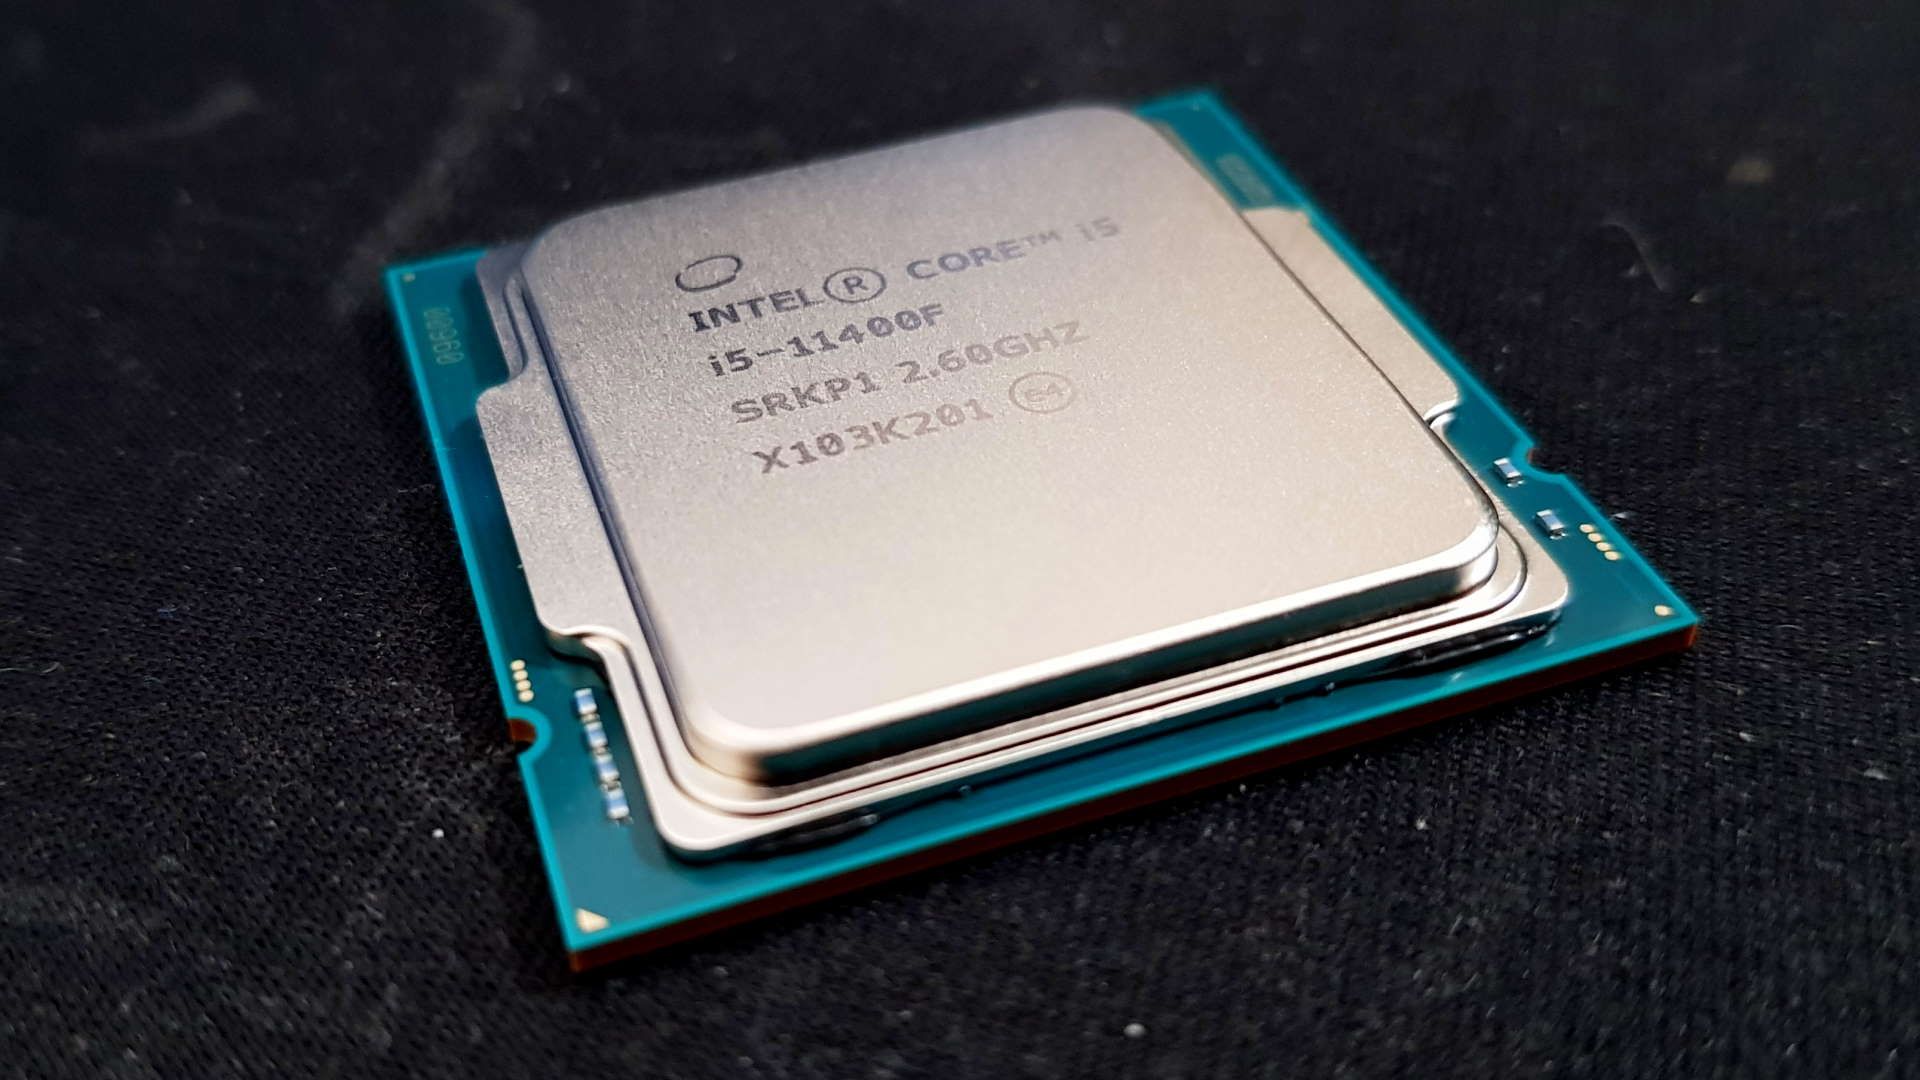 Intel uhd graphics 730 i5 11400. Intel Core 11400f. Процессор i5 11400f. CPU Intel Core i5-11400f. Процессор Intel Core i5 11400f, LGA 1200.